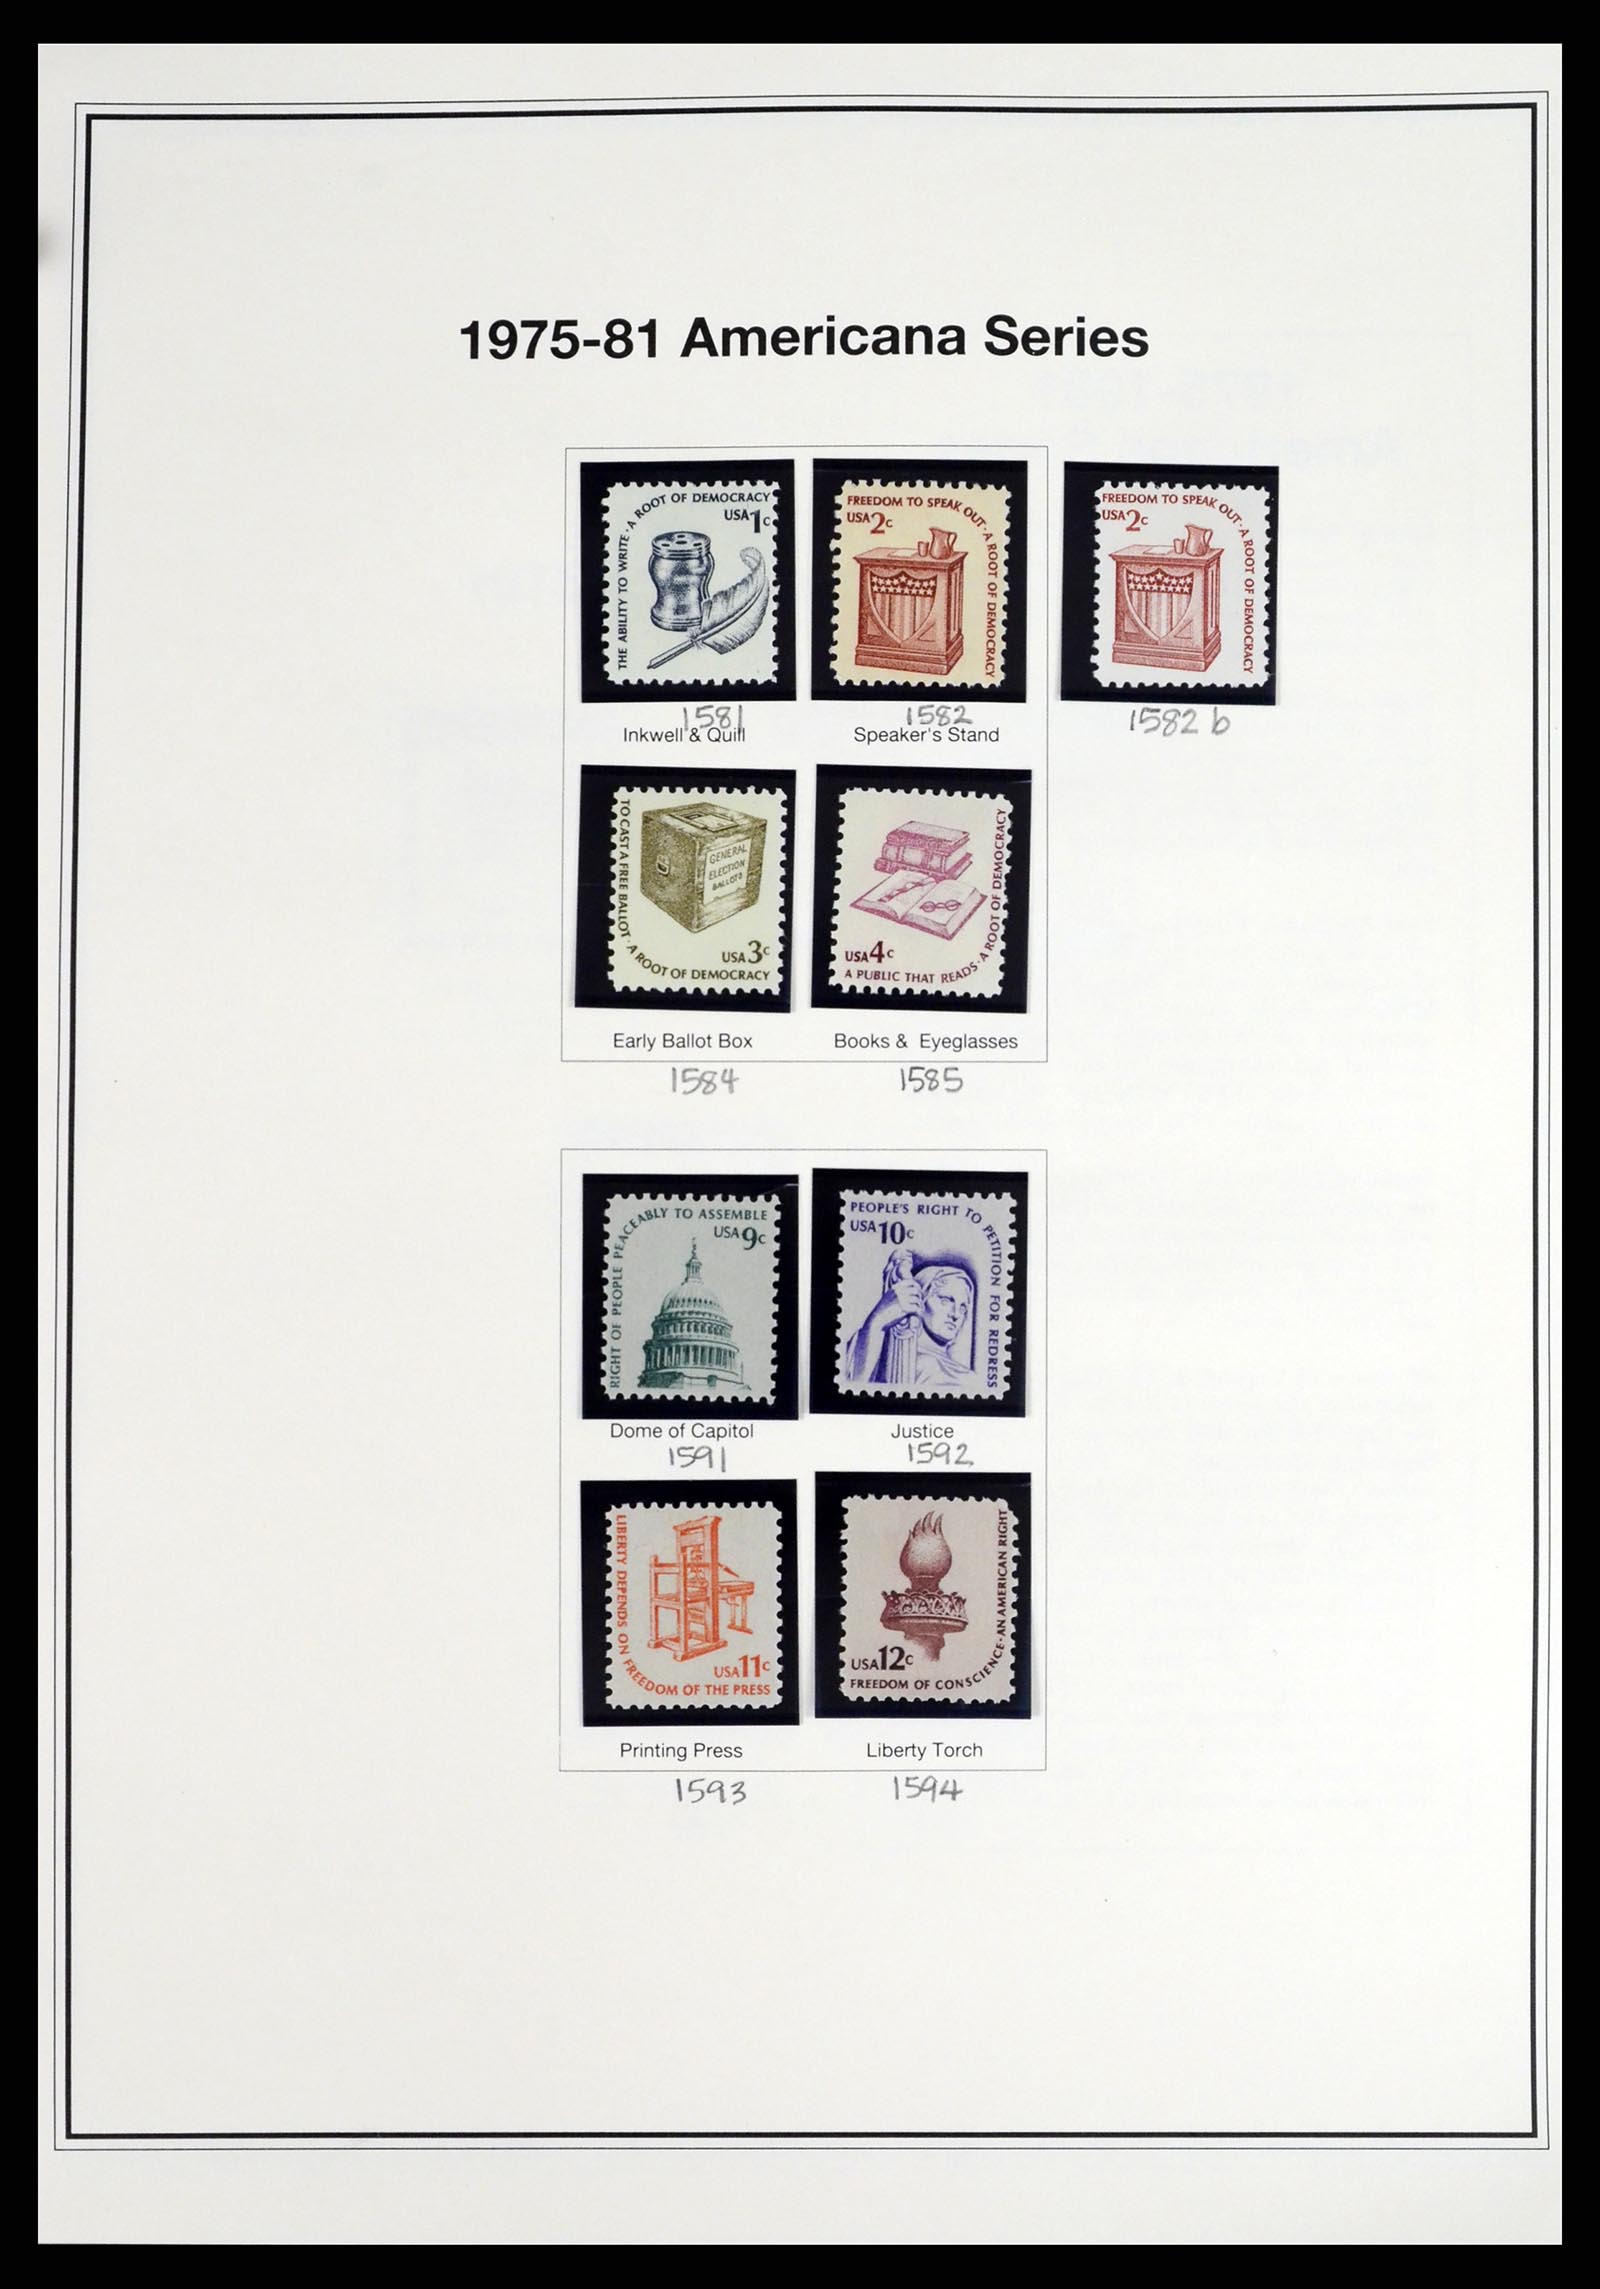 37193 024 - Stamp collection 37193 USA 1970-2020!